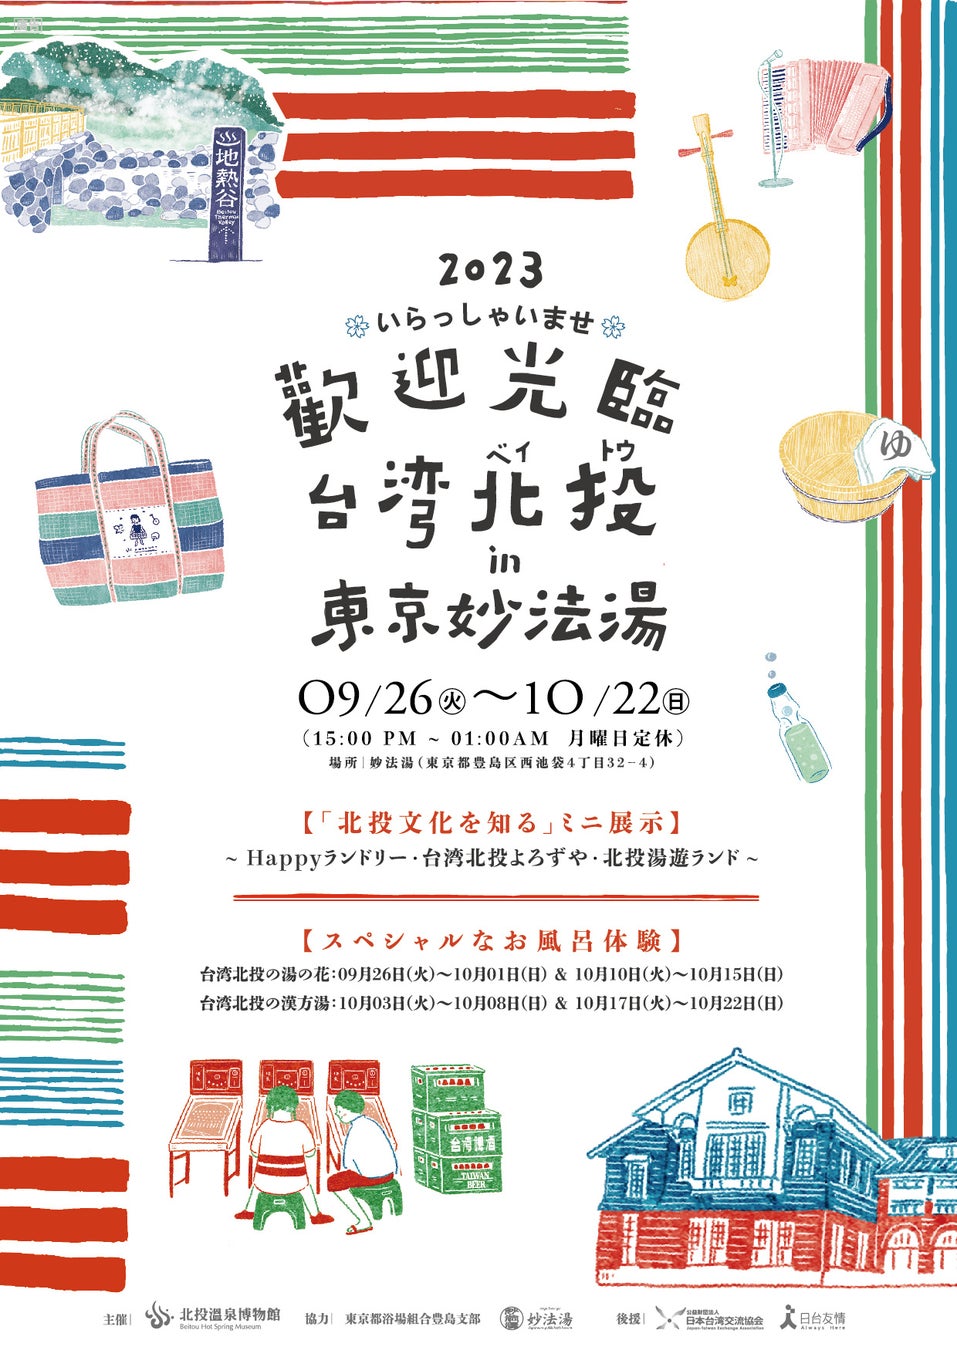 『お風呂で友達を作ろう』北投温泉博物館が東京の銭湯で「五感で体験する台湾北投文化展示会」を開催 台湾文化の魅力を伝える